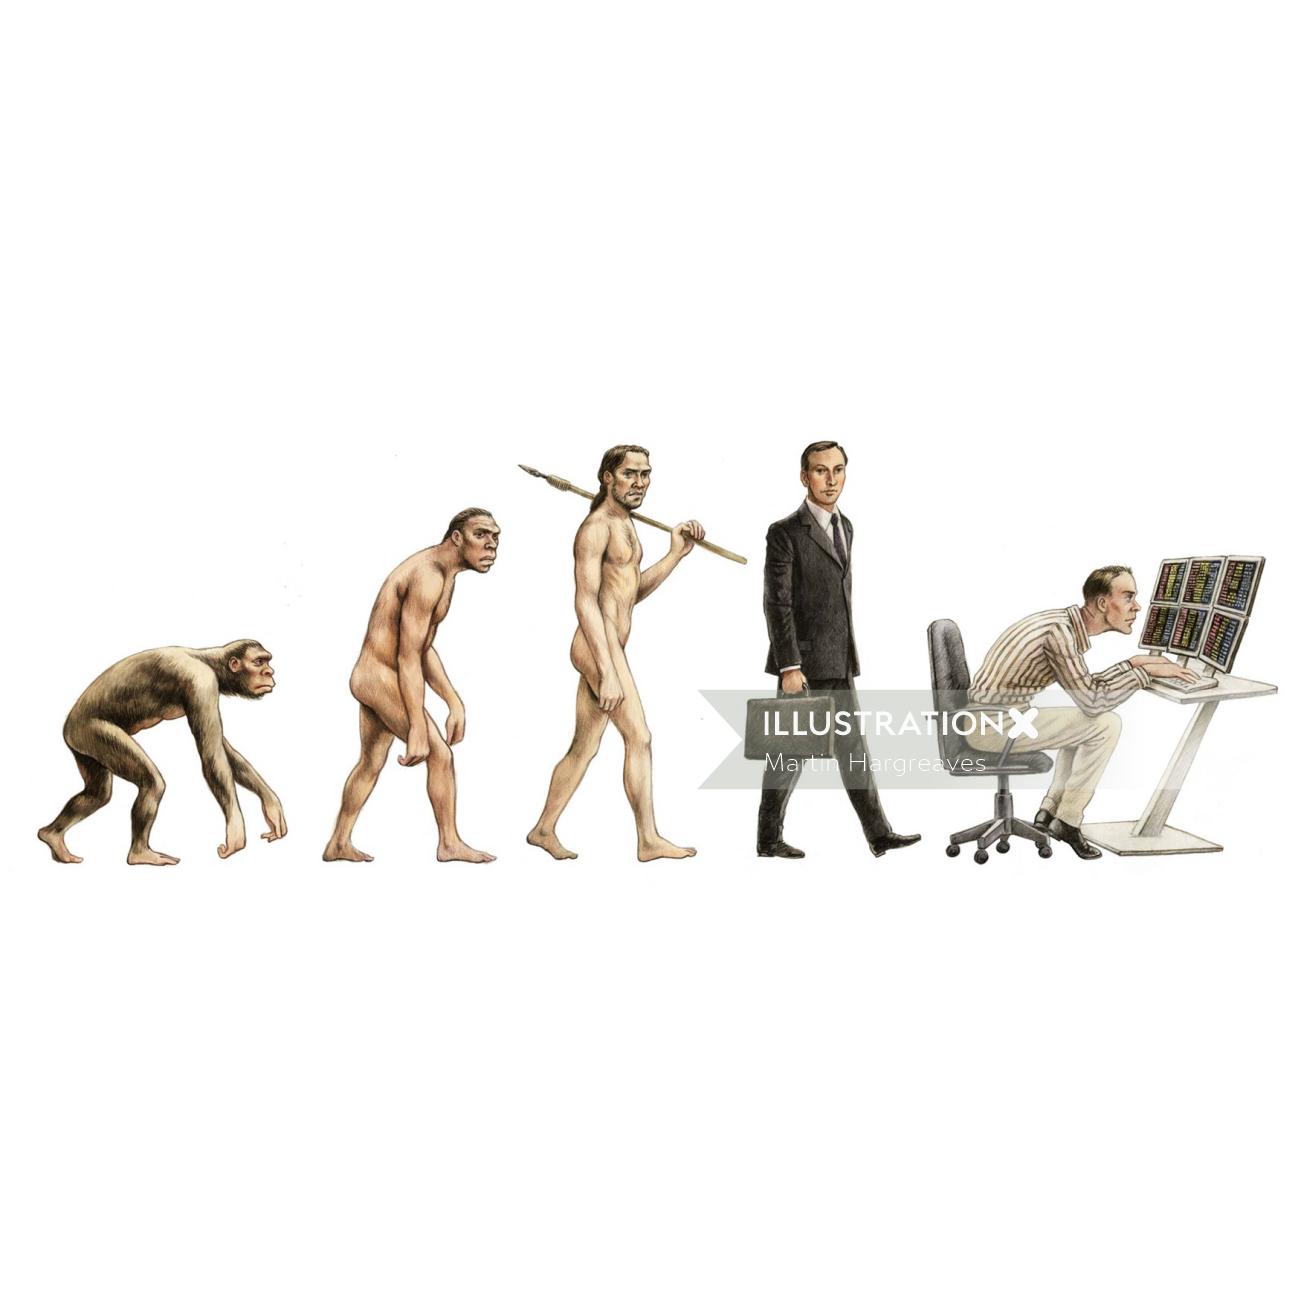 マーティン・ハーグリーブスによる人類のイラストの進化